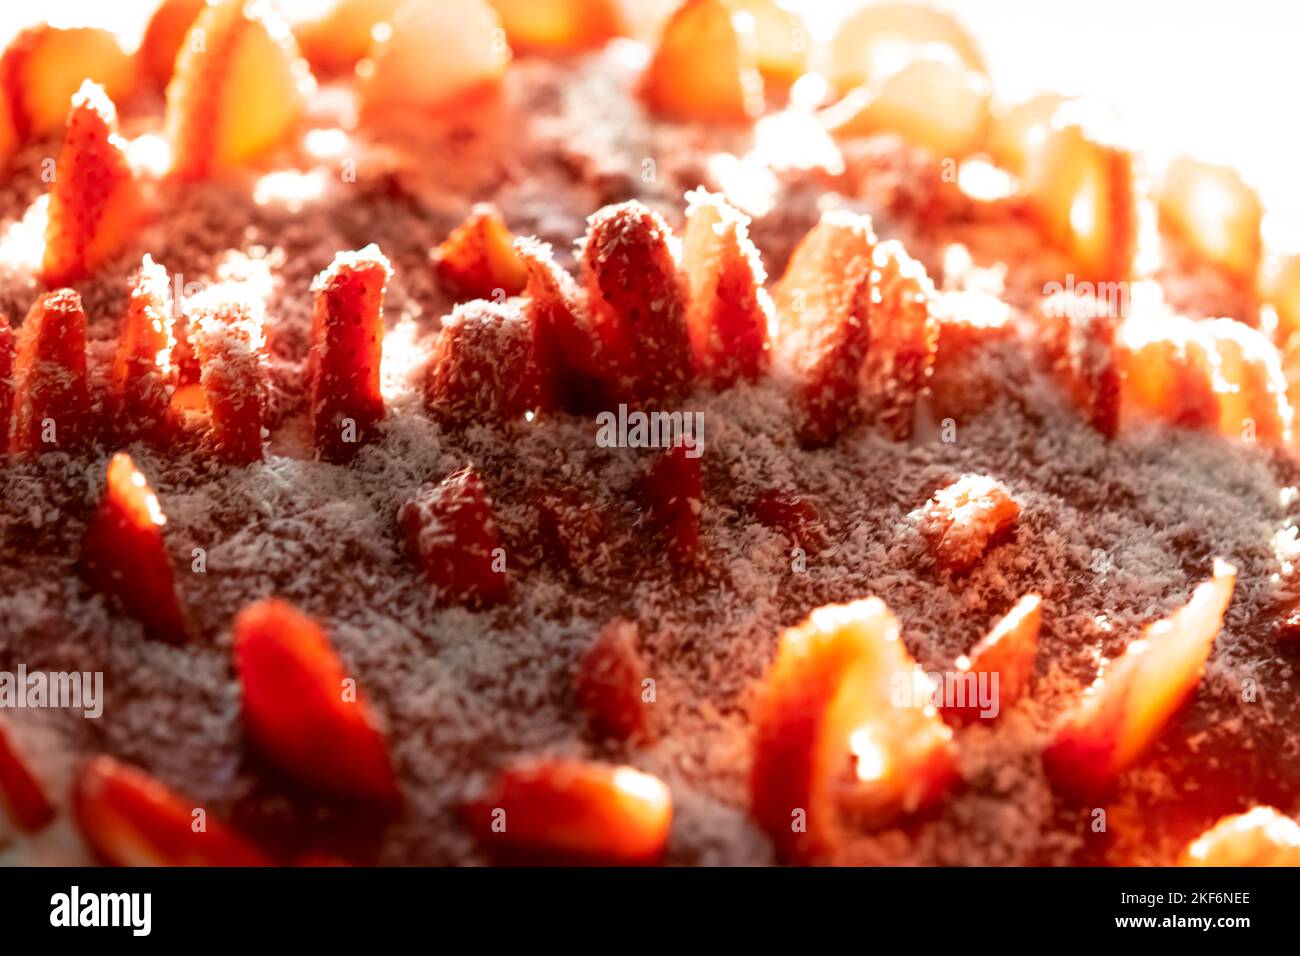 tarte aux fraises noix de coco arrosée vue latérale macro photographie dans une plaque circulaire sous la lumière naturelle du jour. Faible profondeur de champ avec mise au point sélective. Banque D'Images